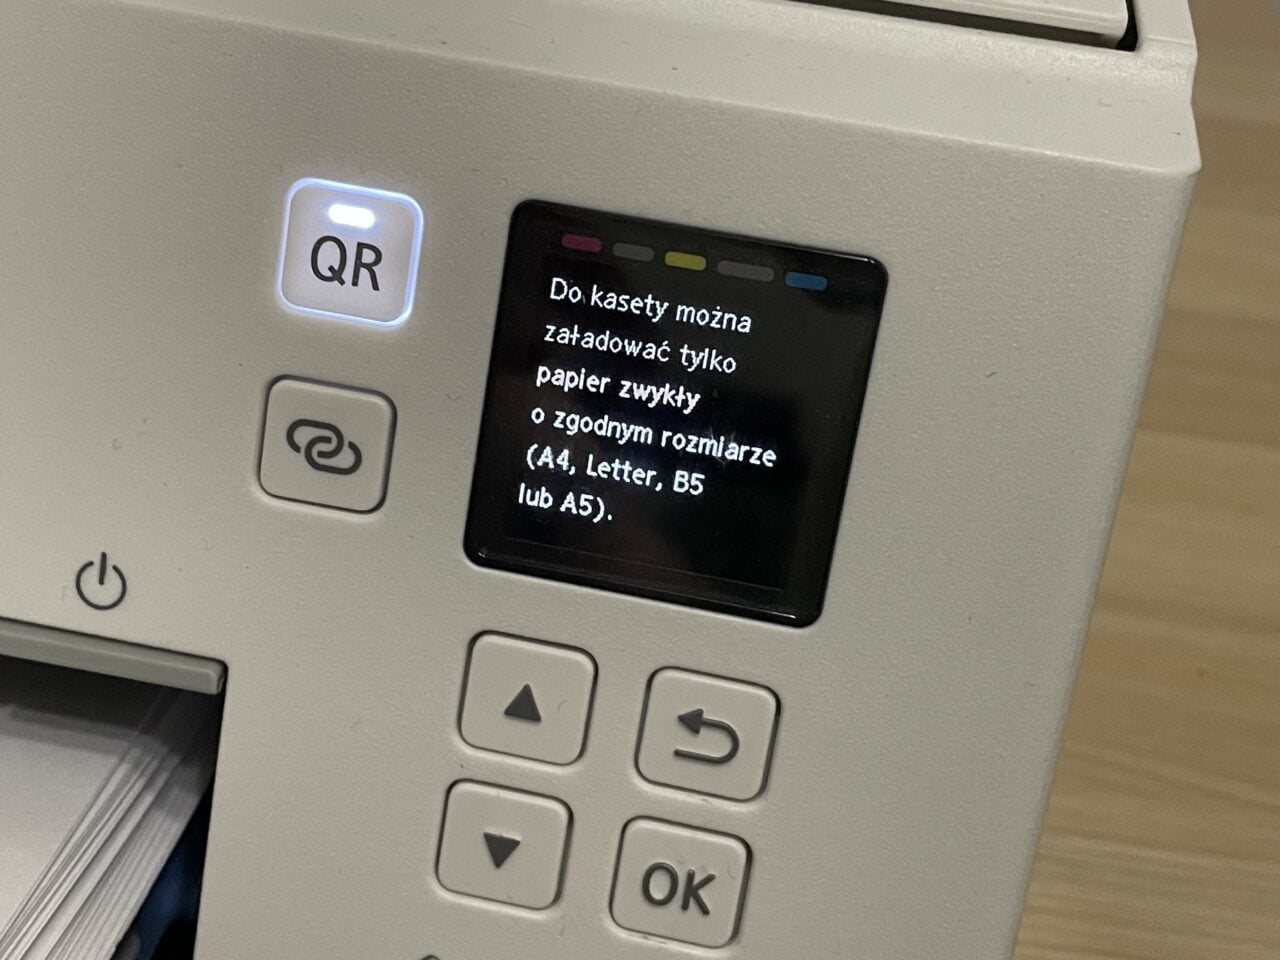 Drukarka nie pobiera papieru. Panel sterowania drukarki z podświetlonym przyciskiem "QR" i wyświetlaczem LCD pokazującym komunikat w języku polskim o załadunku papieru o standardowych rozmiarach.